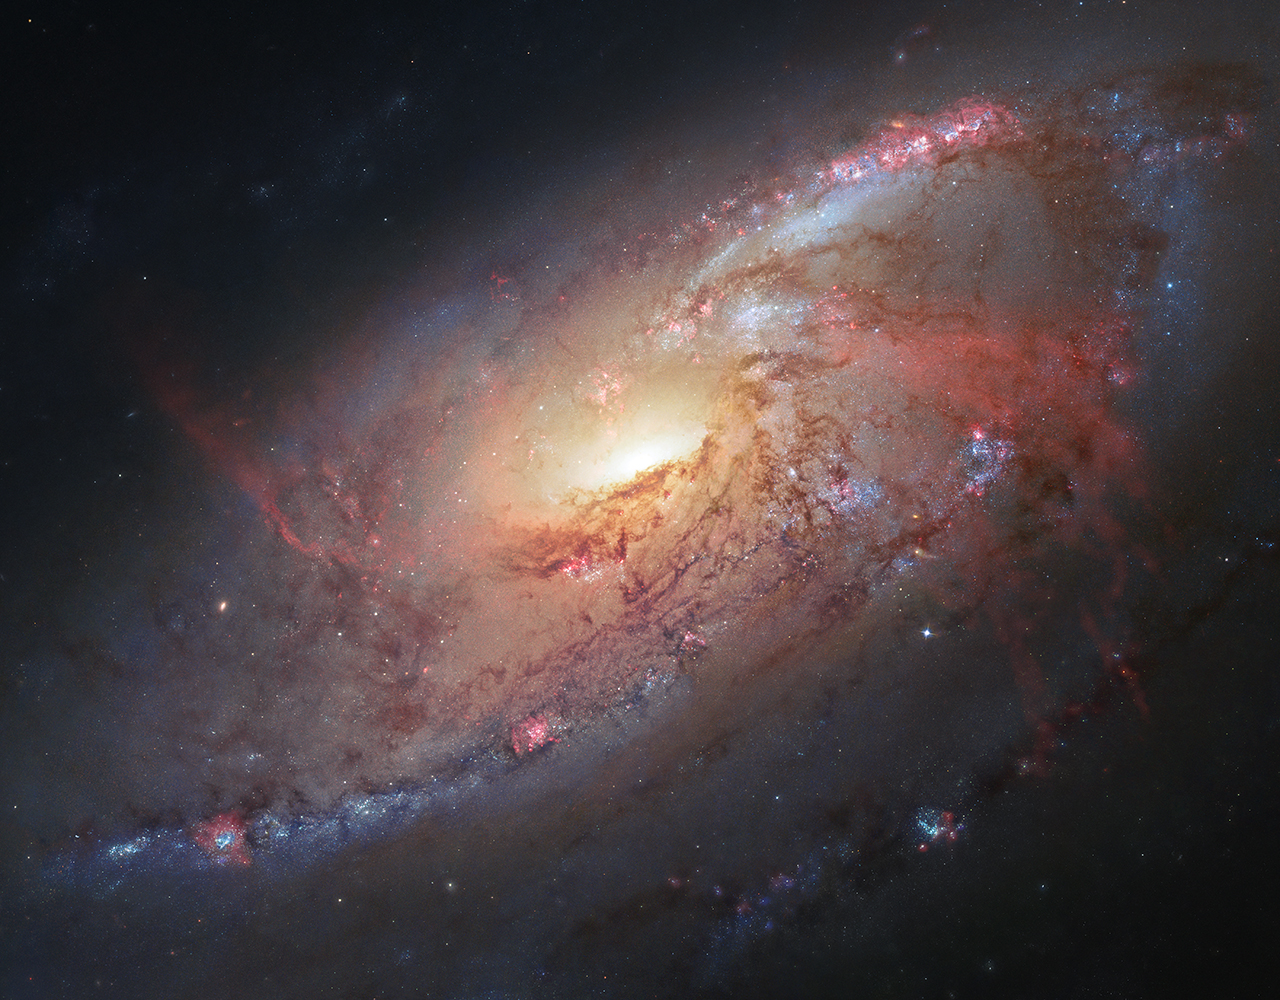 The M106 galaxy.